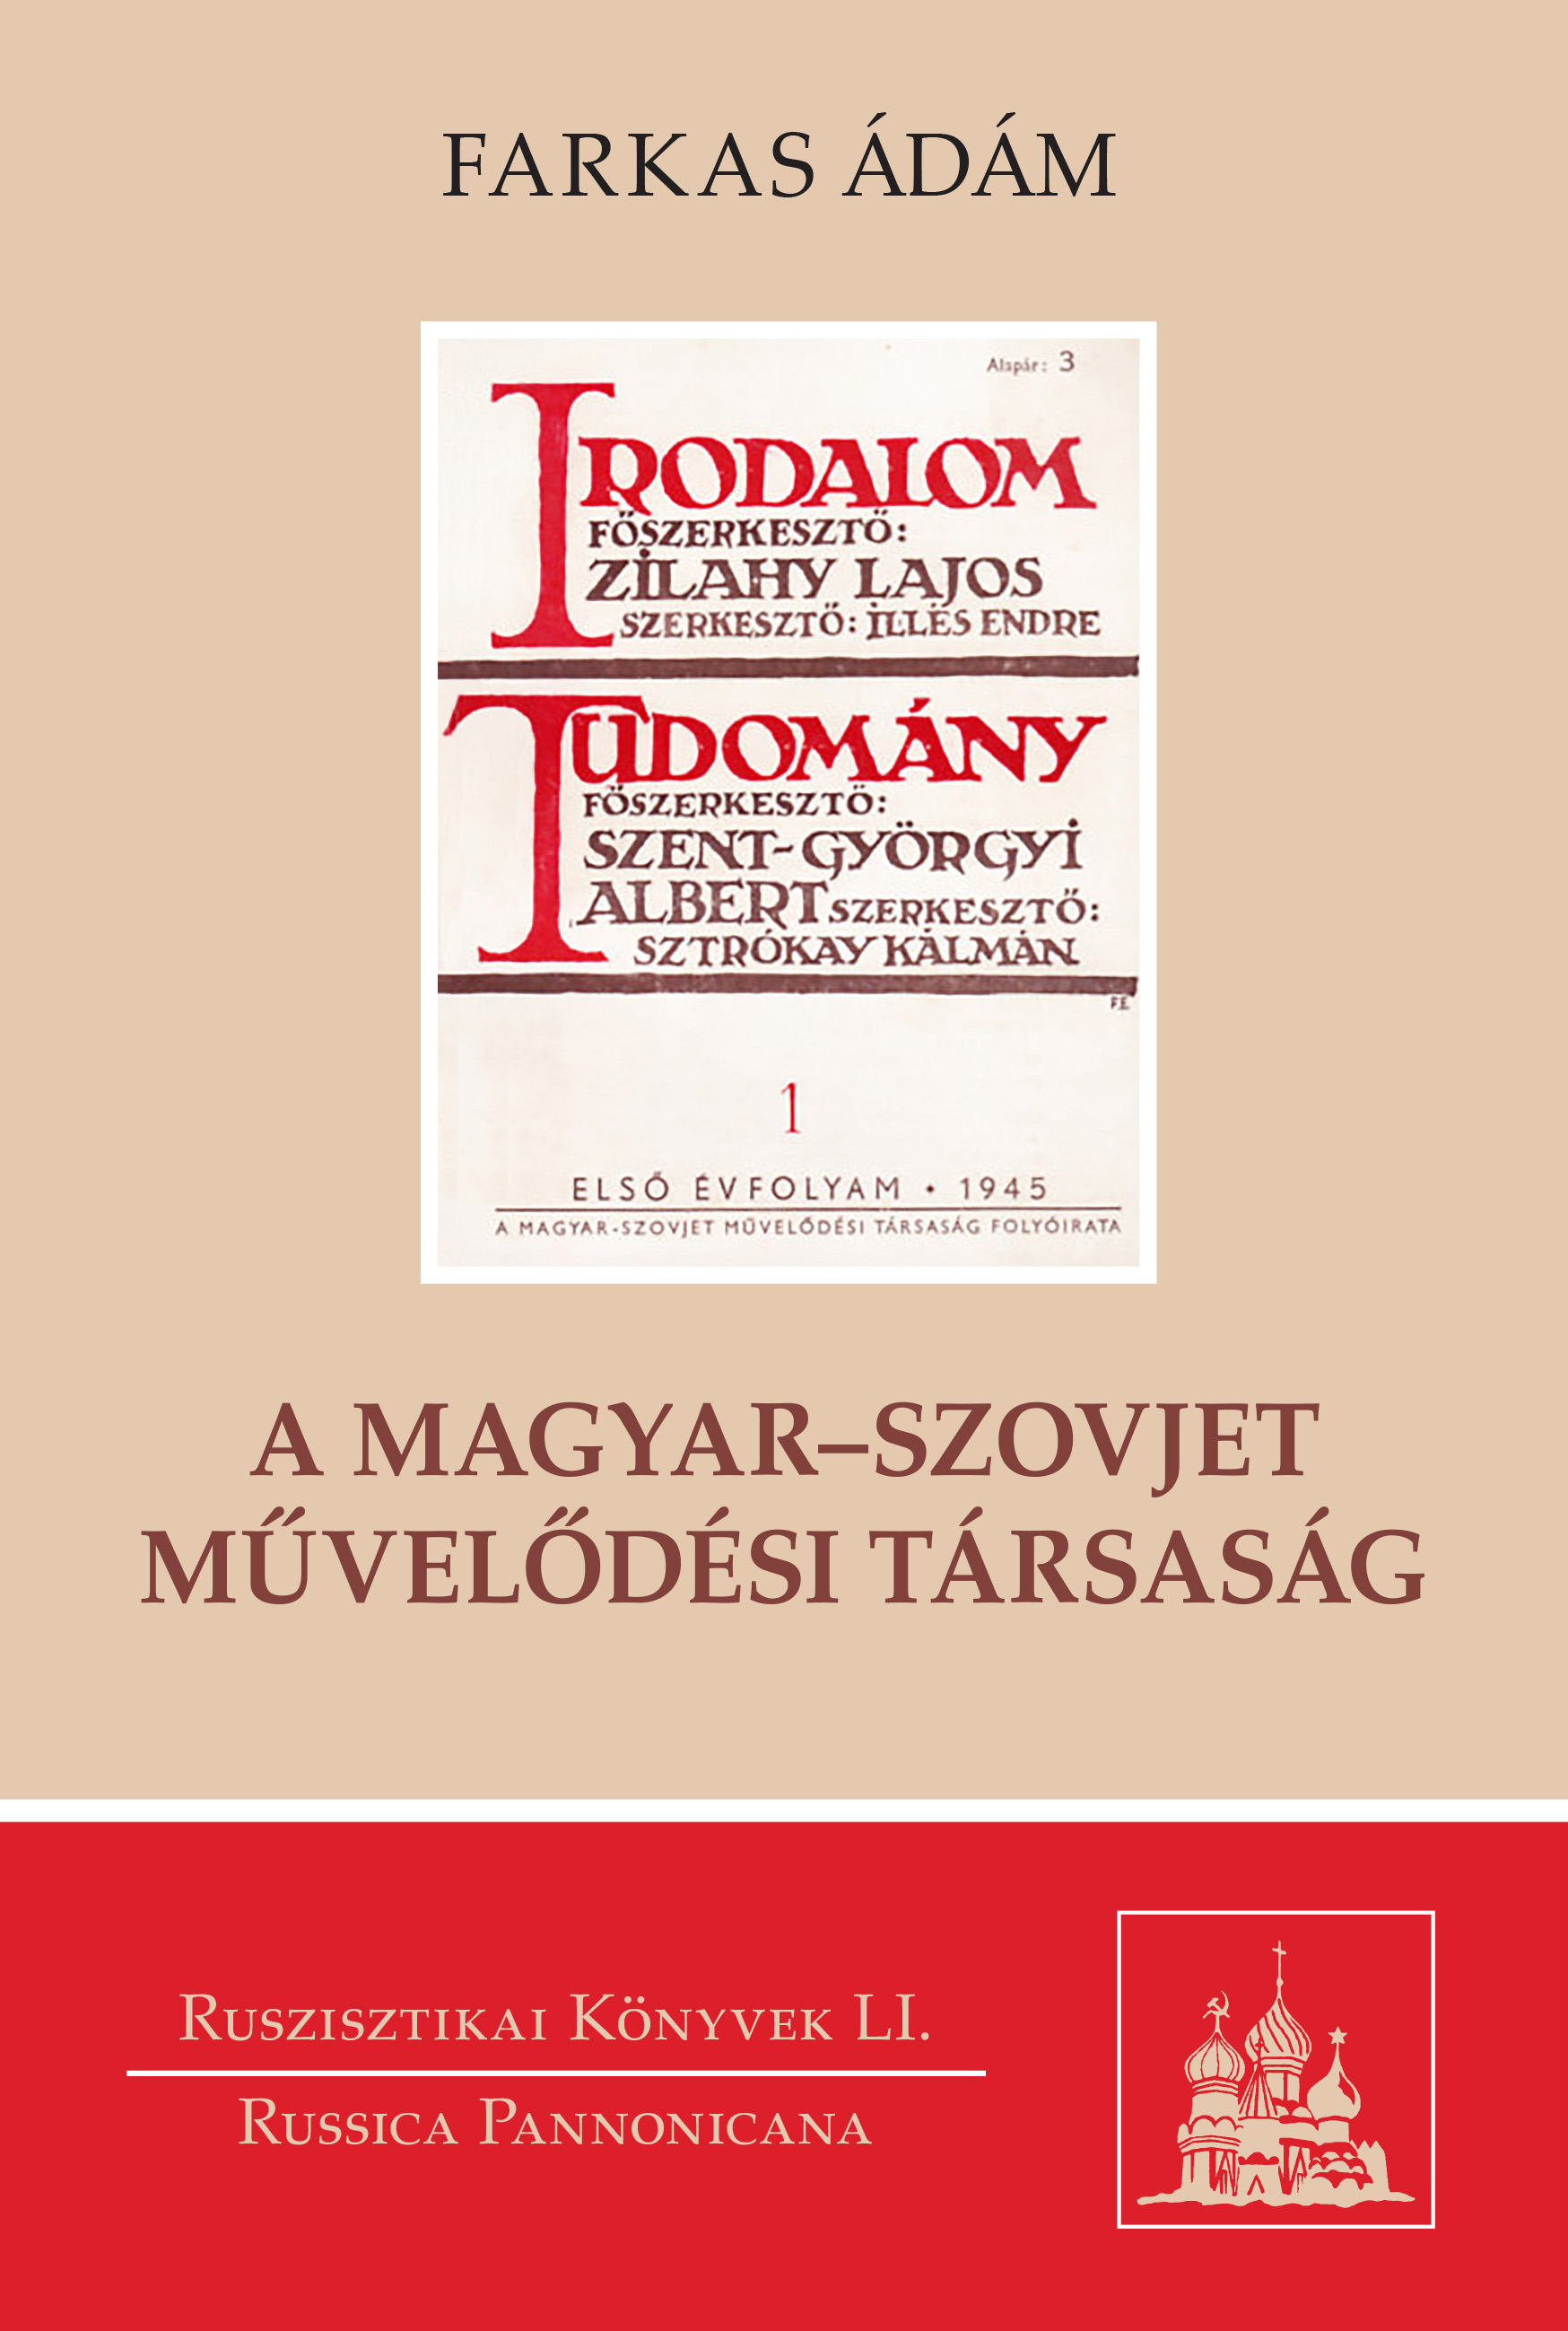 A Magyar-Szovjet Művelődési Társaság